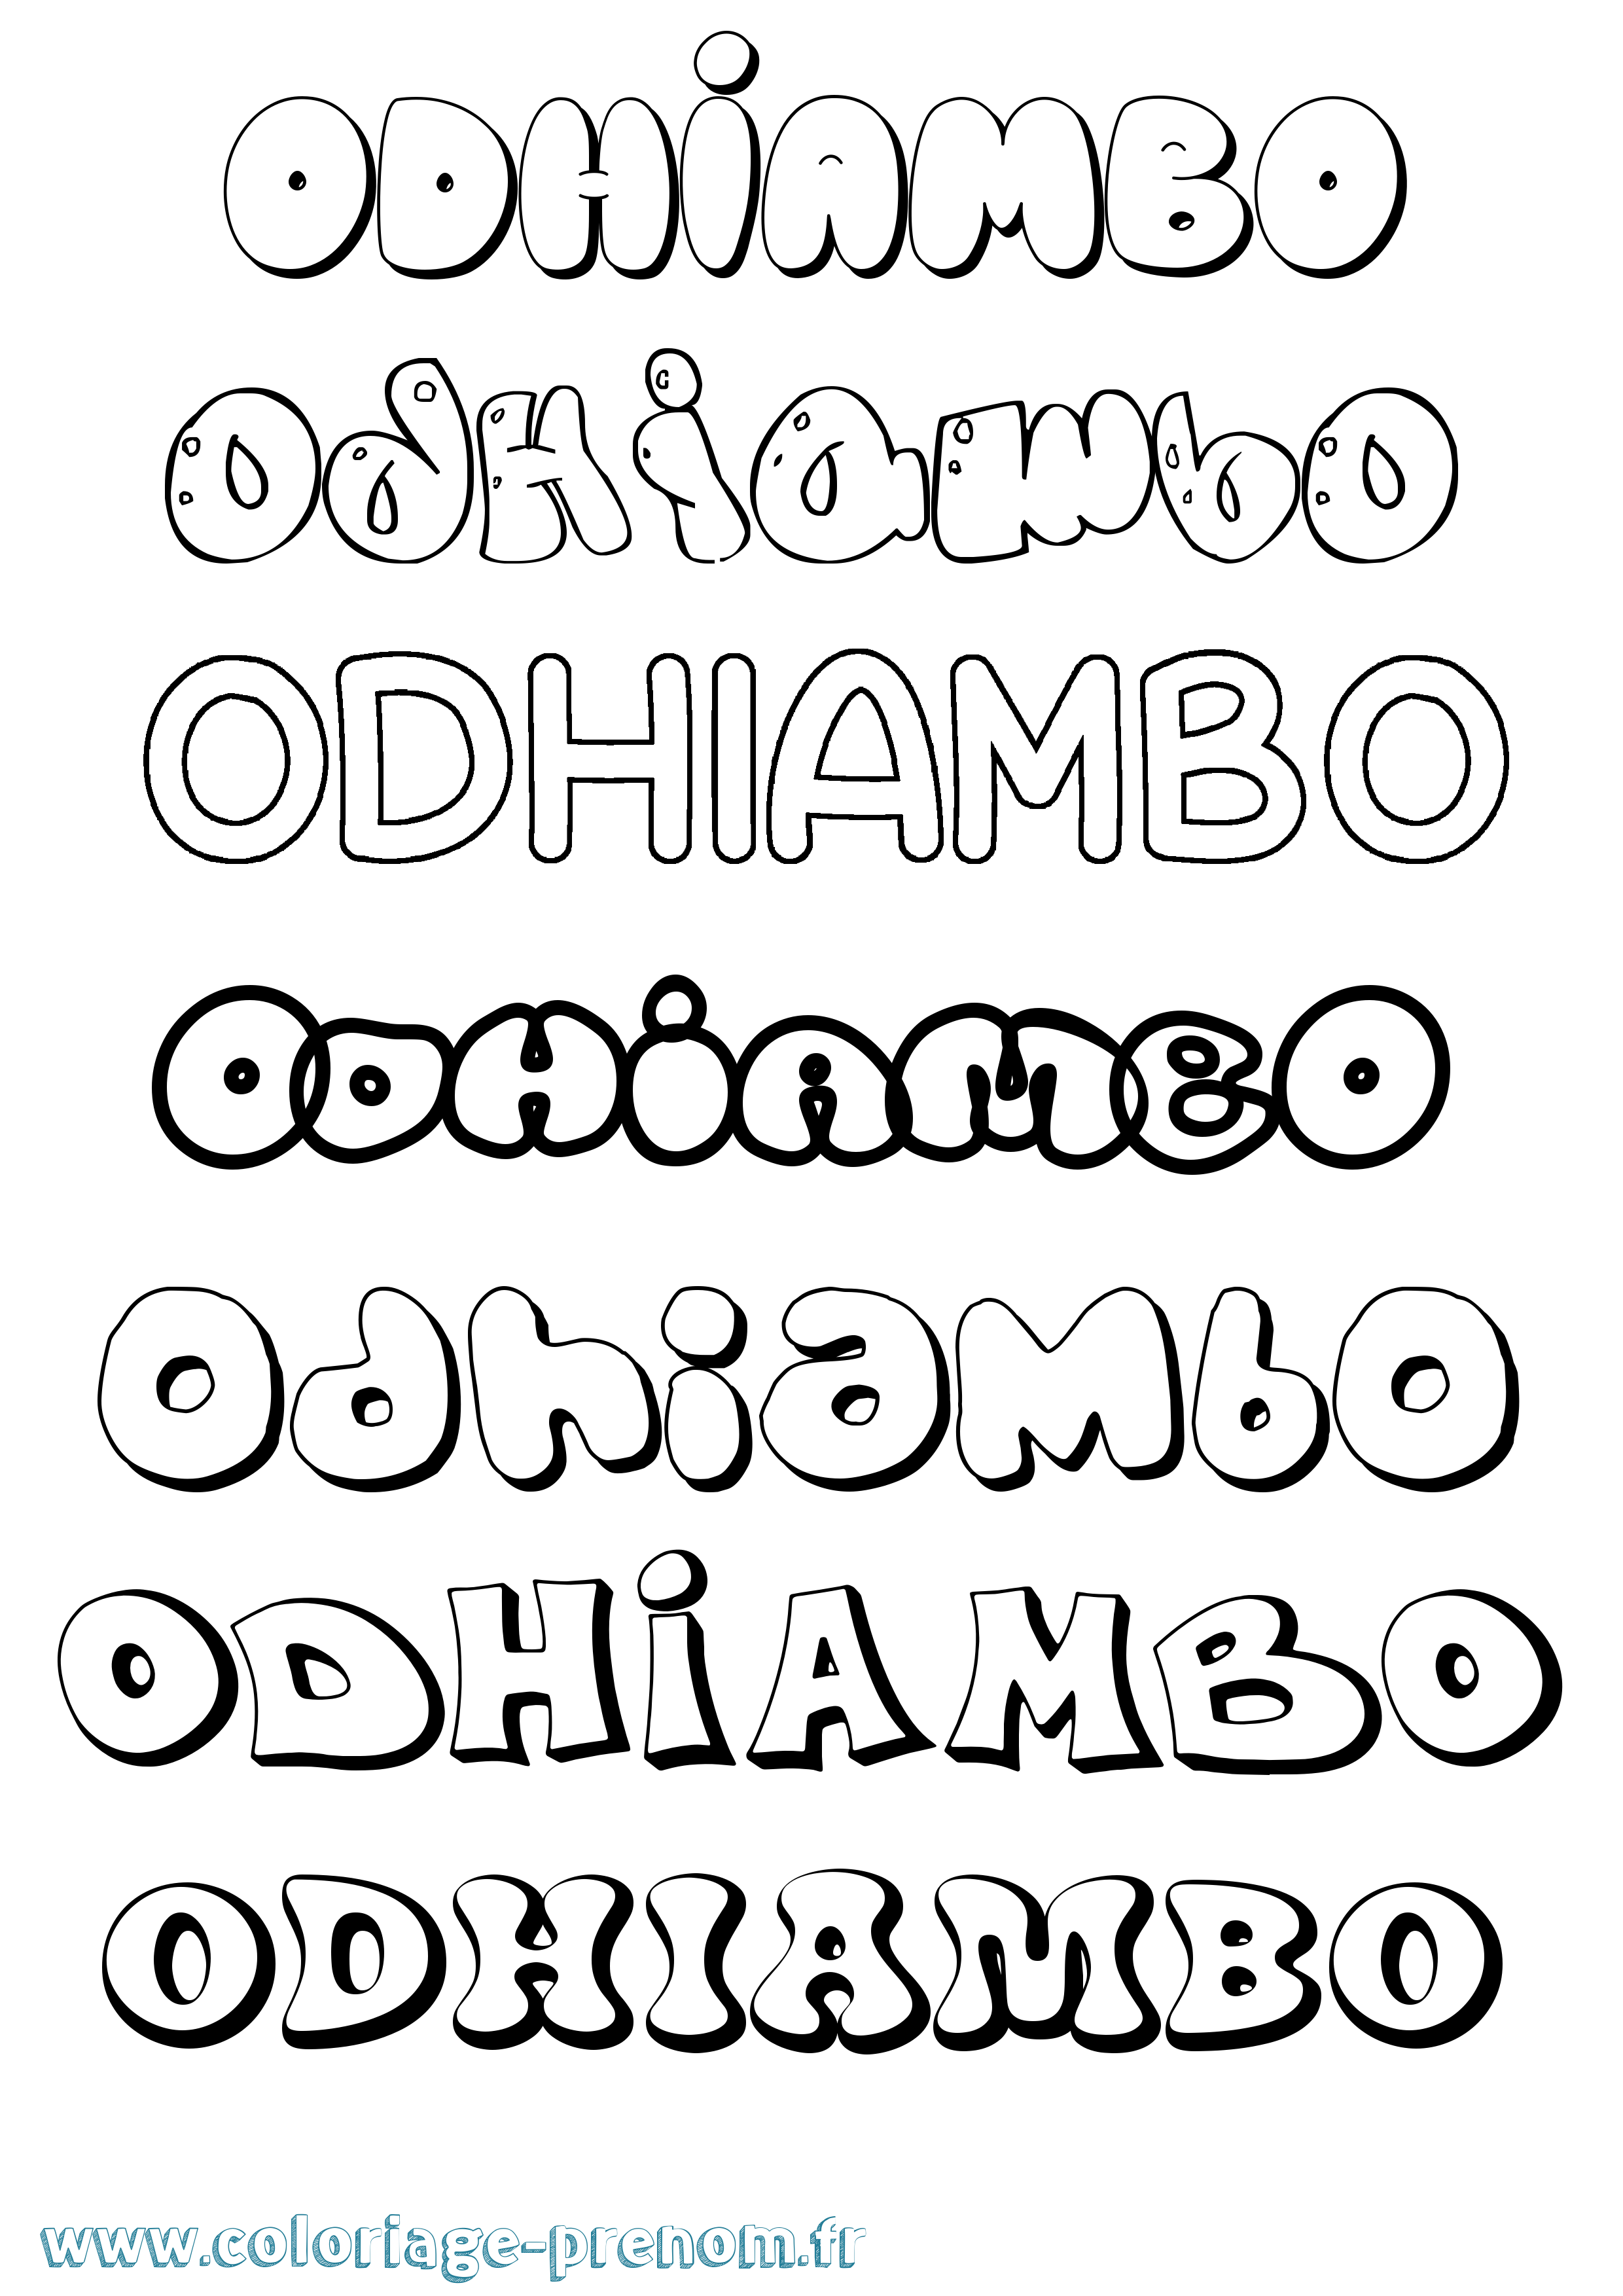 Coloriage prénom Odhiambo Bubble